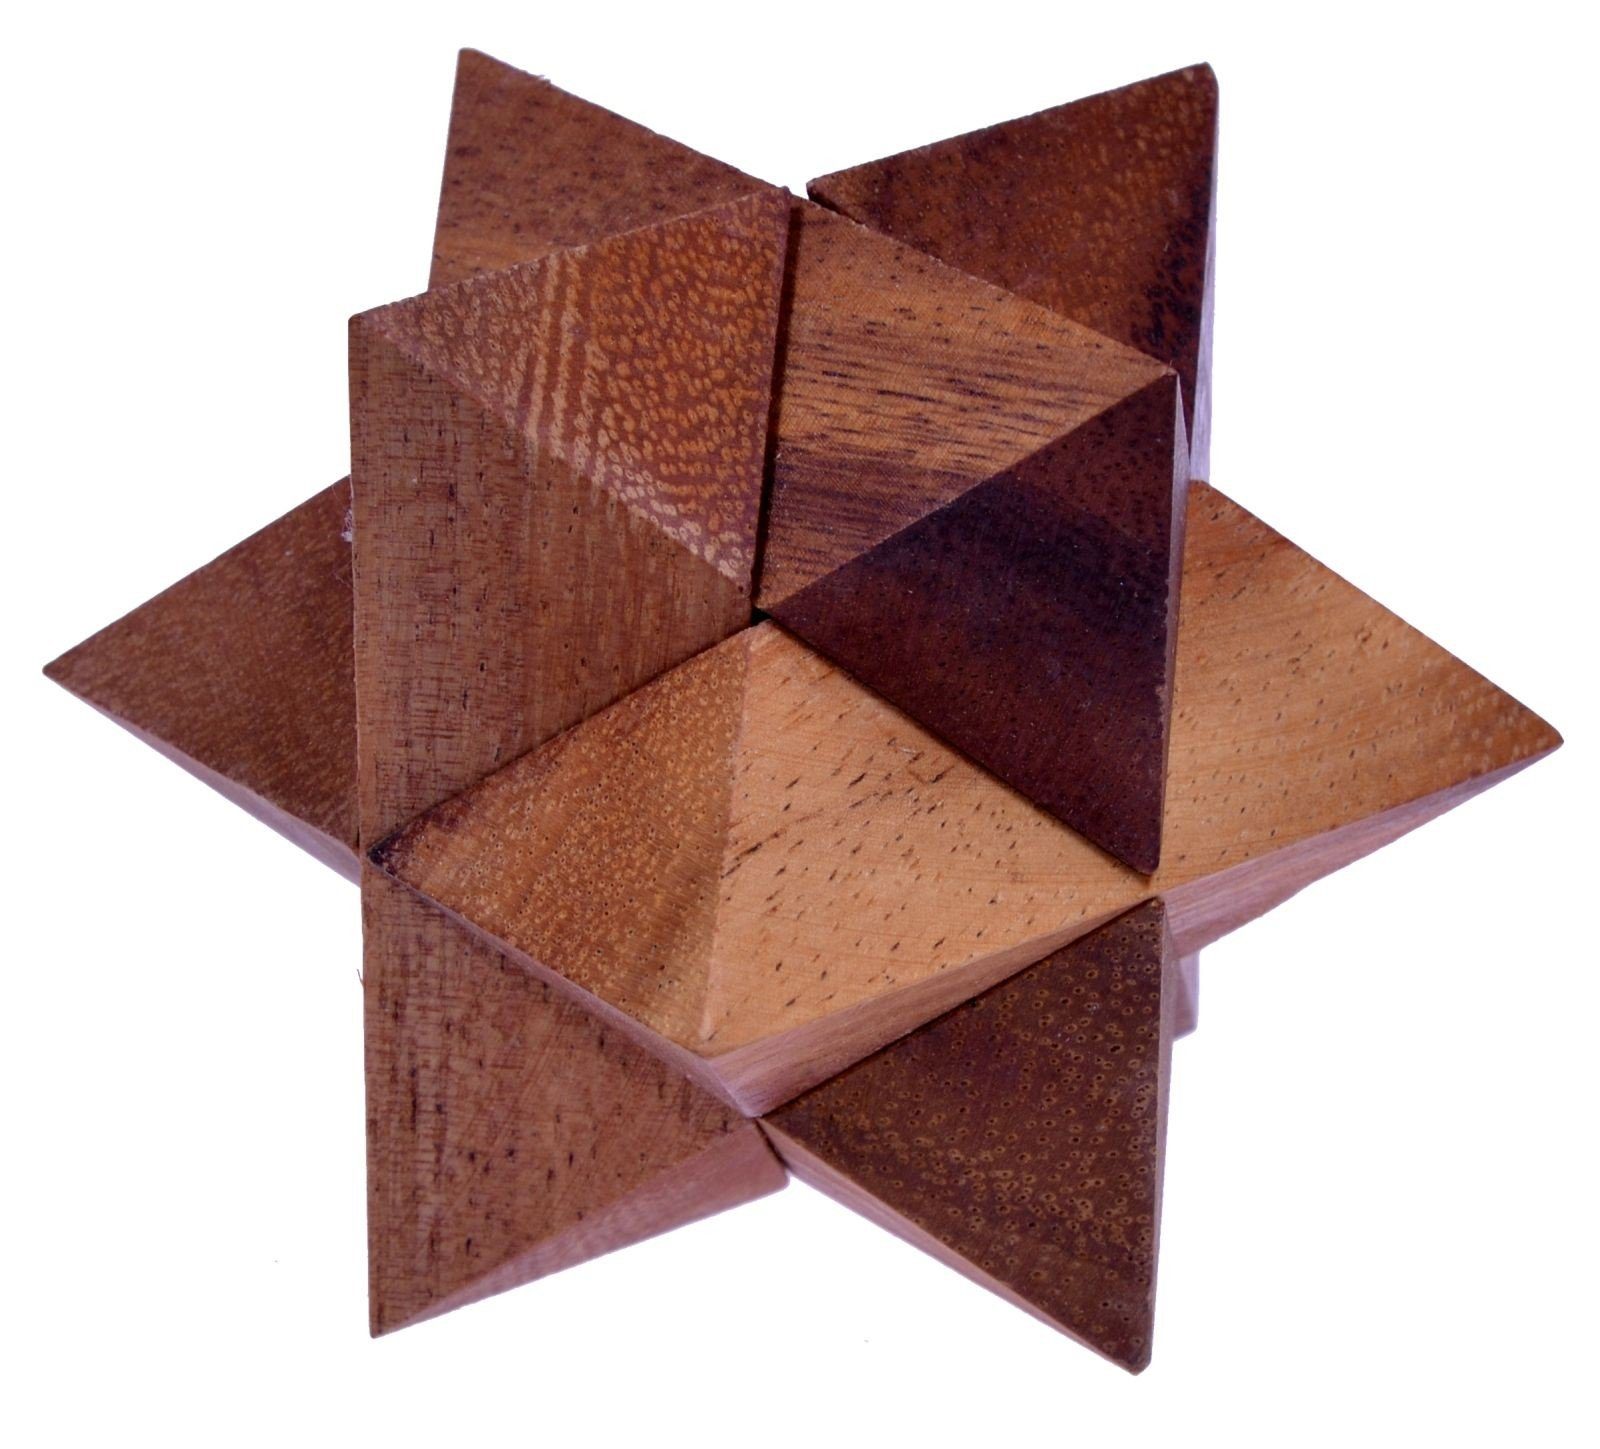 Logoplay Holzspiele Spiel, Stern Gr. S - 5 cm - Star - 3D Puzzle - Knobelspiel aus HolzHolzspielzeug